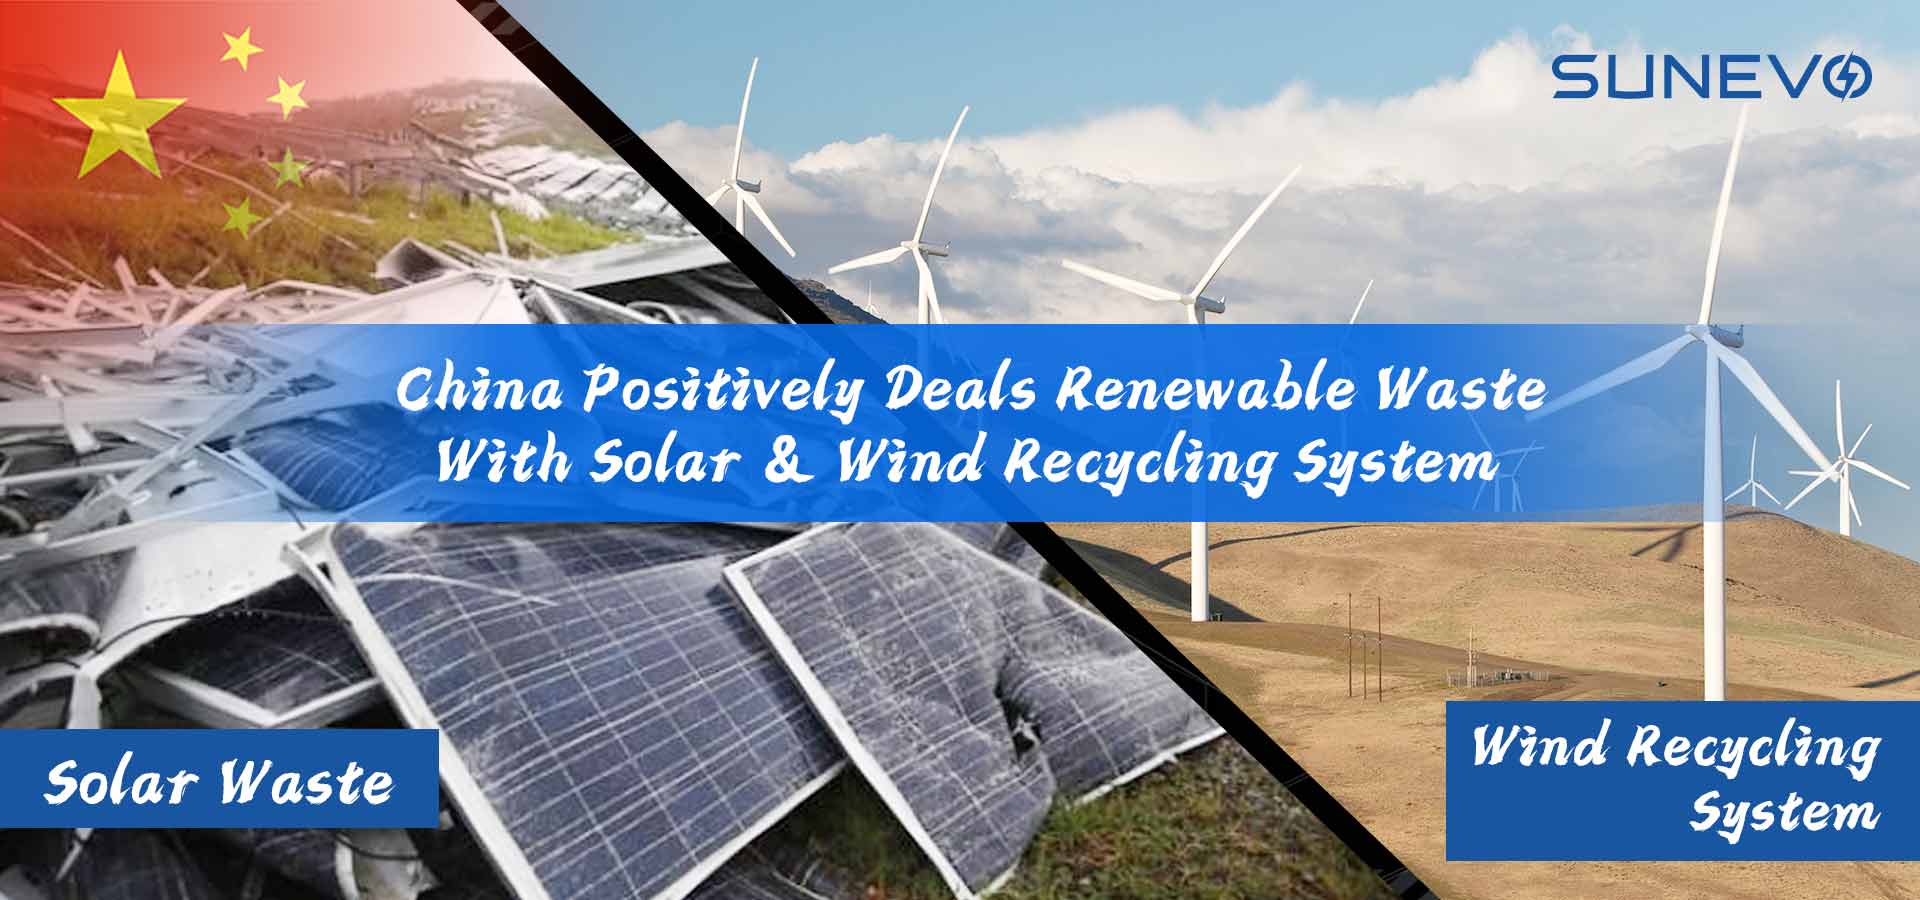 La Chine traite les déchets renouvelables avec des systèmes de recyclage solaire et éolien